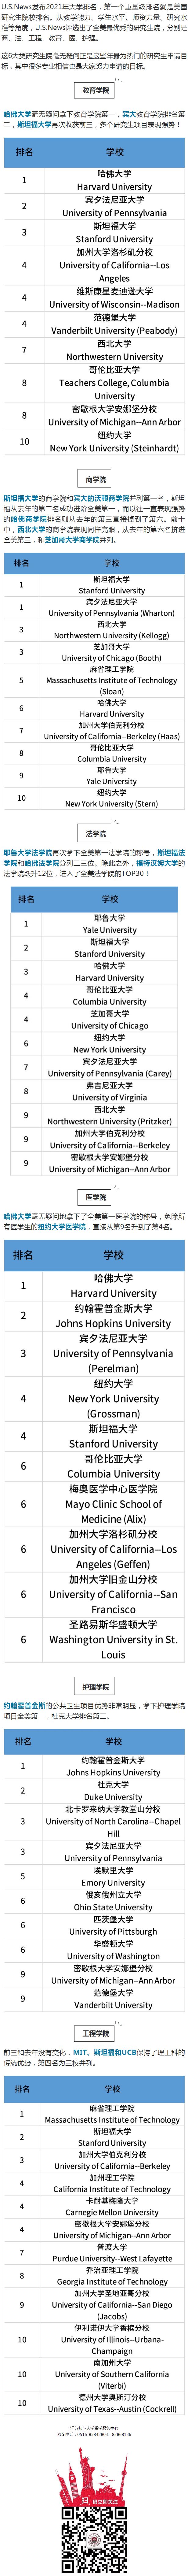 2021年U.S.News发布美国研究生院排名，哈佛商学院跌出前三